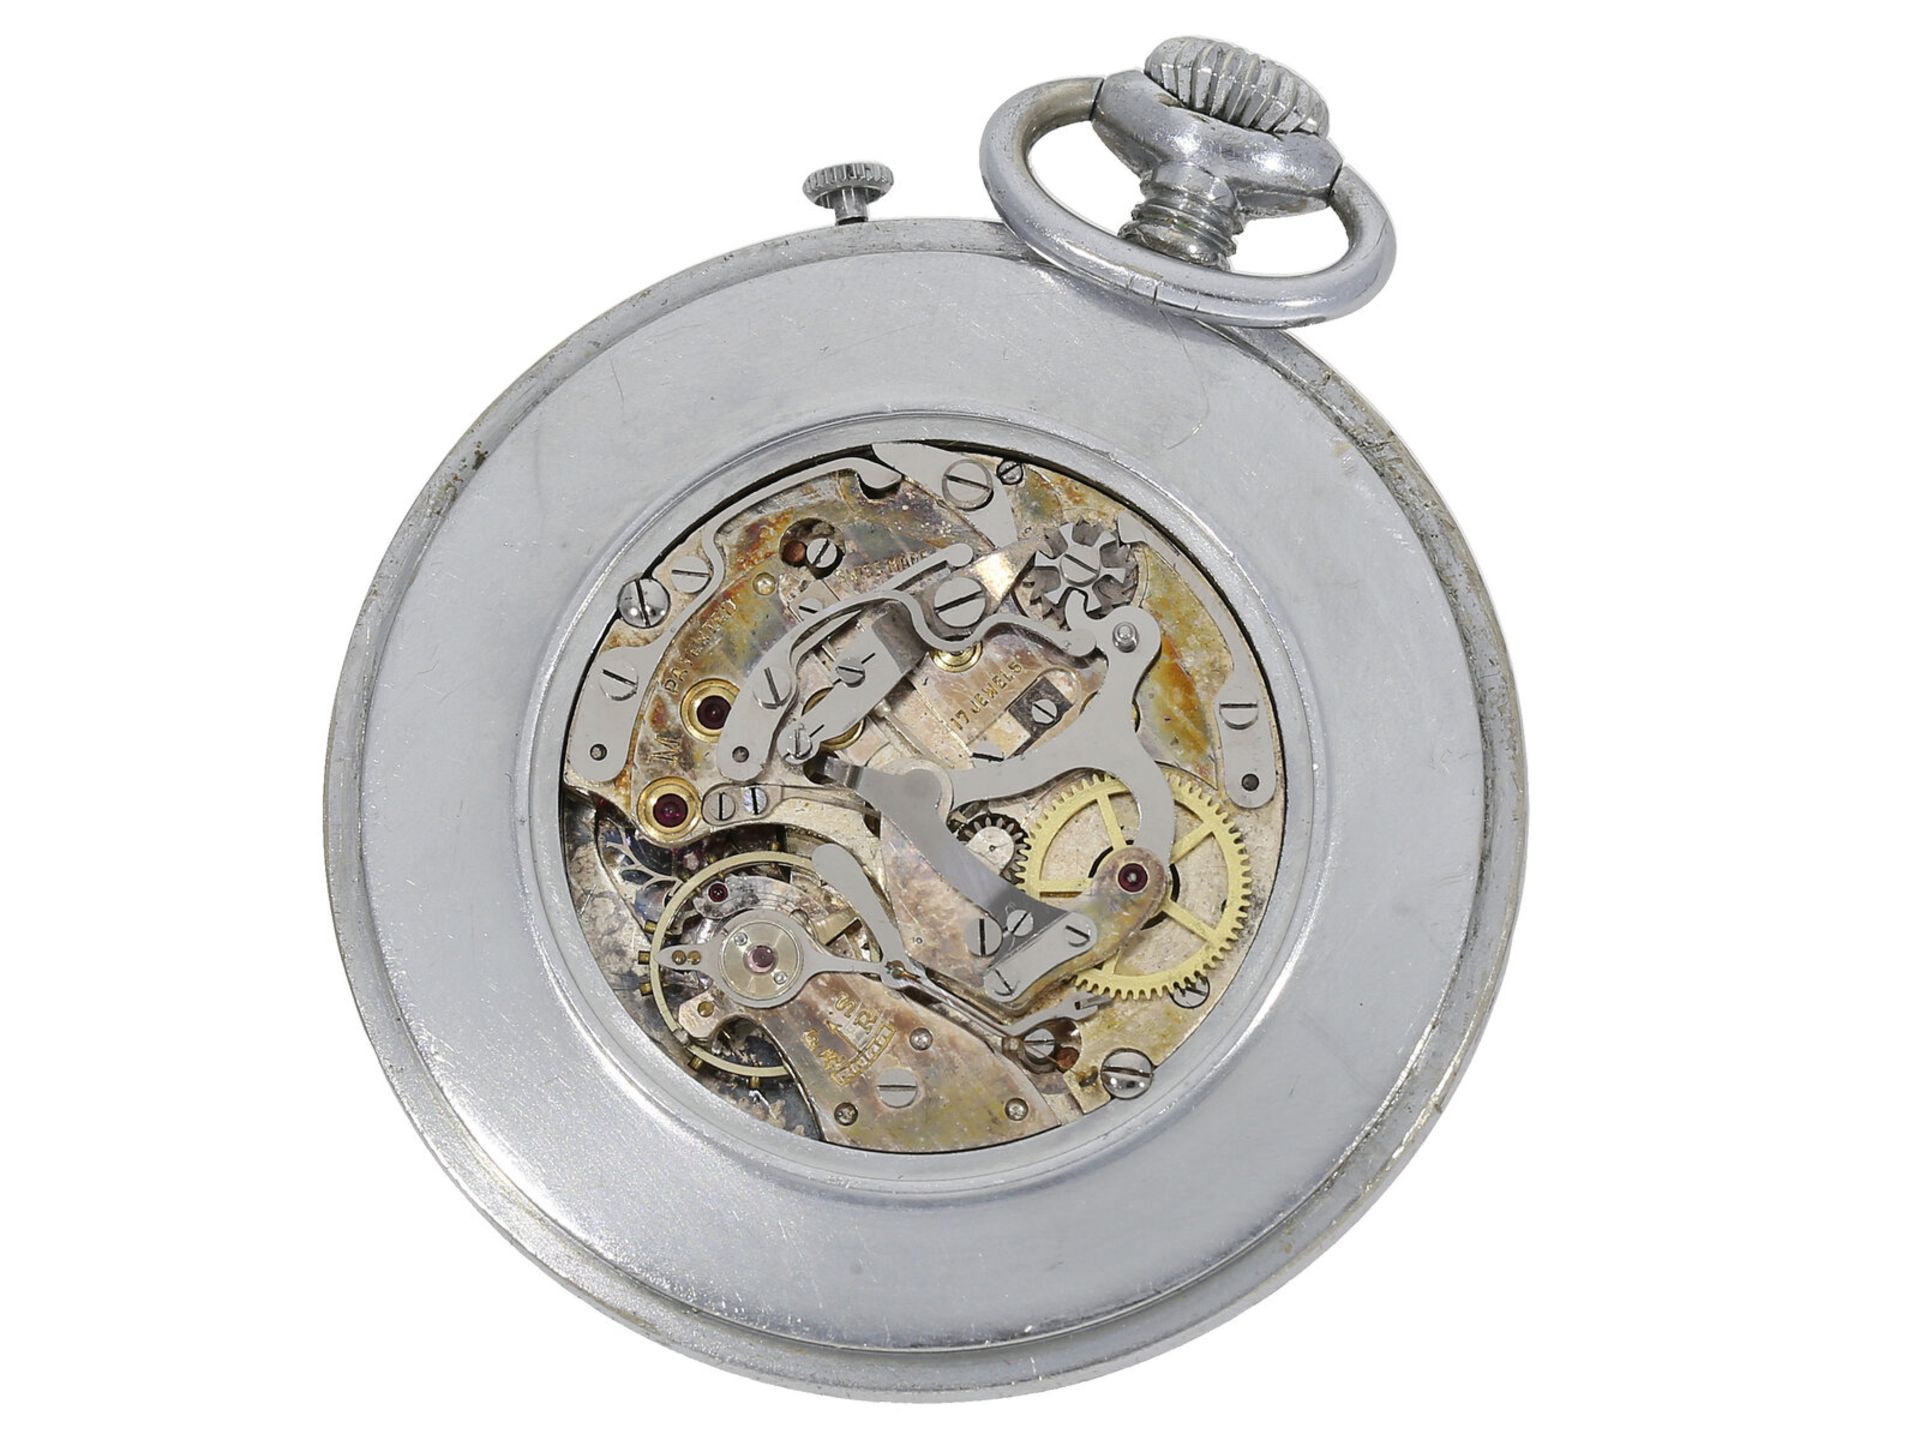 Taschenuhr: sehr seltener Chronograph mit "2-tone-Dial", Pierce, Art déco 30er-Jahre - Bild 2 aus 4